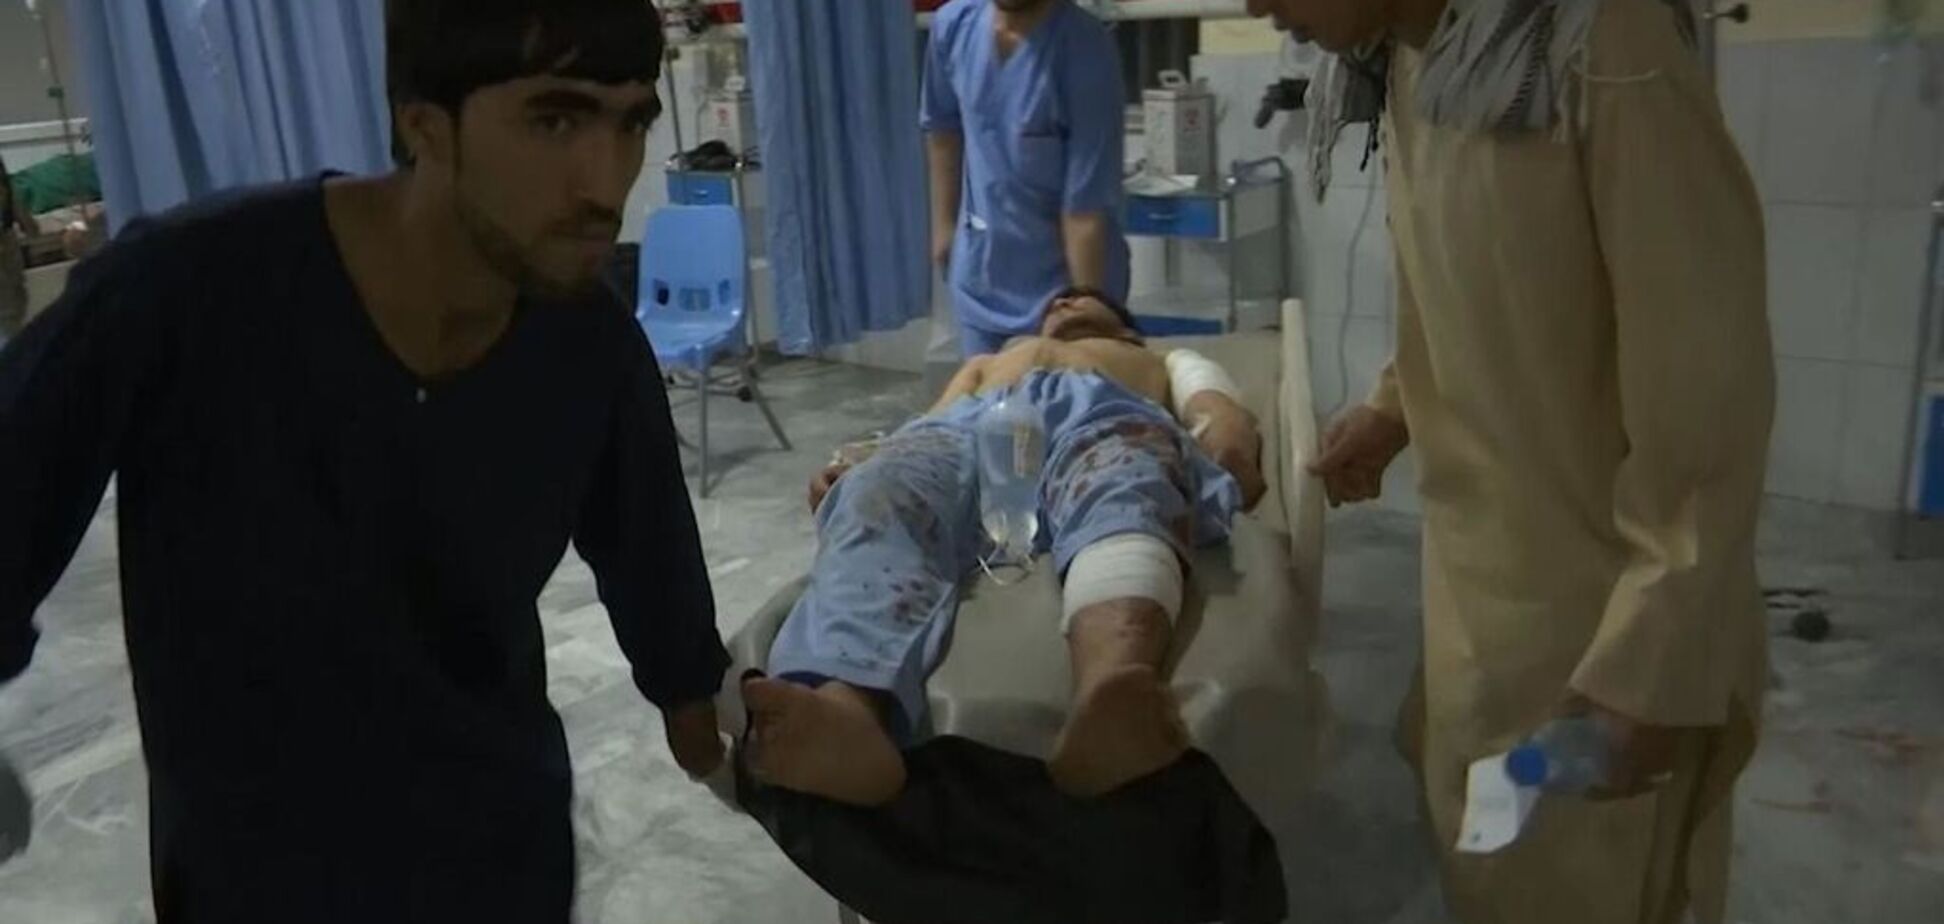 Тела не успевали выносить: в Афганистане взрыв на свадьбе убил 63 человека. Фото и видео 18+